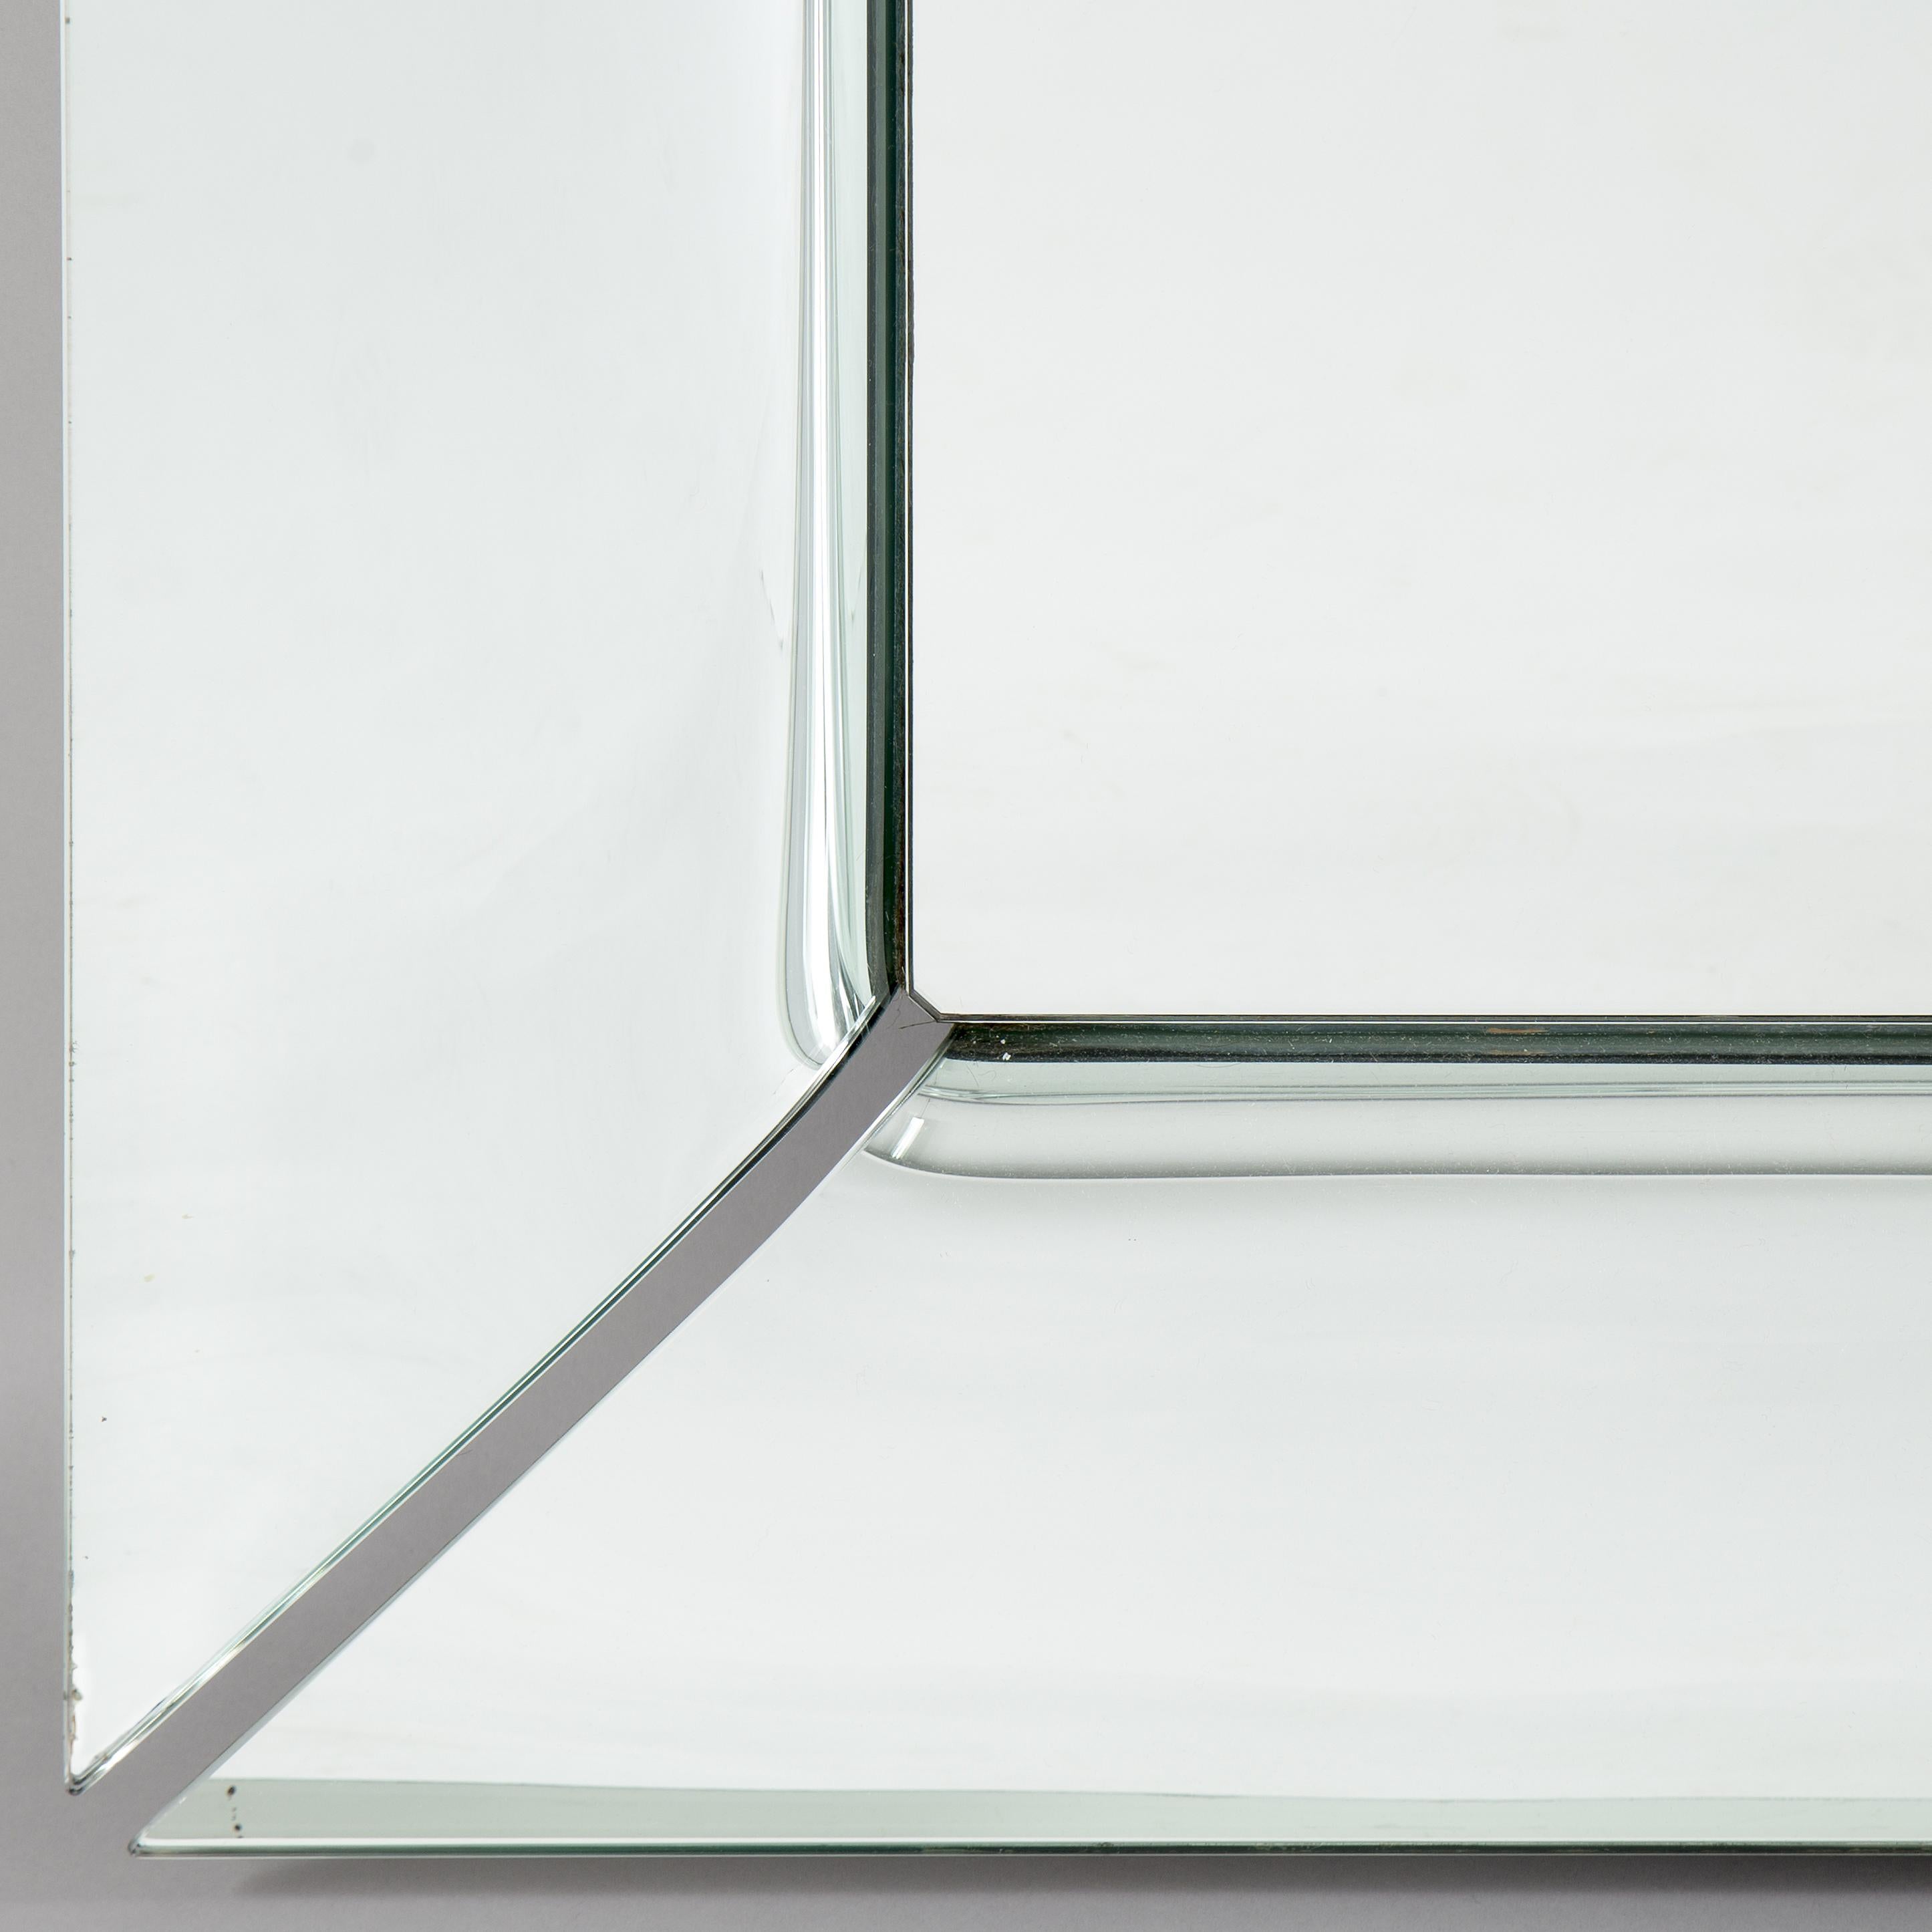 SPIEGEL AUS GEBOGENEM GLAS
Freistehender Spiegel, auch als Hängespiegel erhältlich, aus 6 mm starkem gebogenem Glas, bestehend aus vier separaten, hintersilbernden, gebogenen Elementen. Auch in halbreflektierendem Titanglas oder in bronzefarbenem